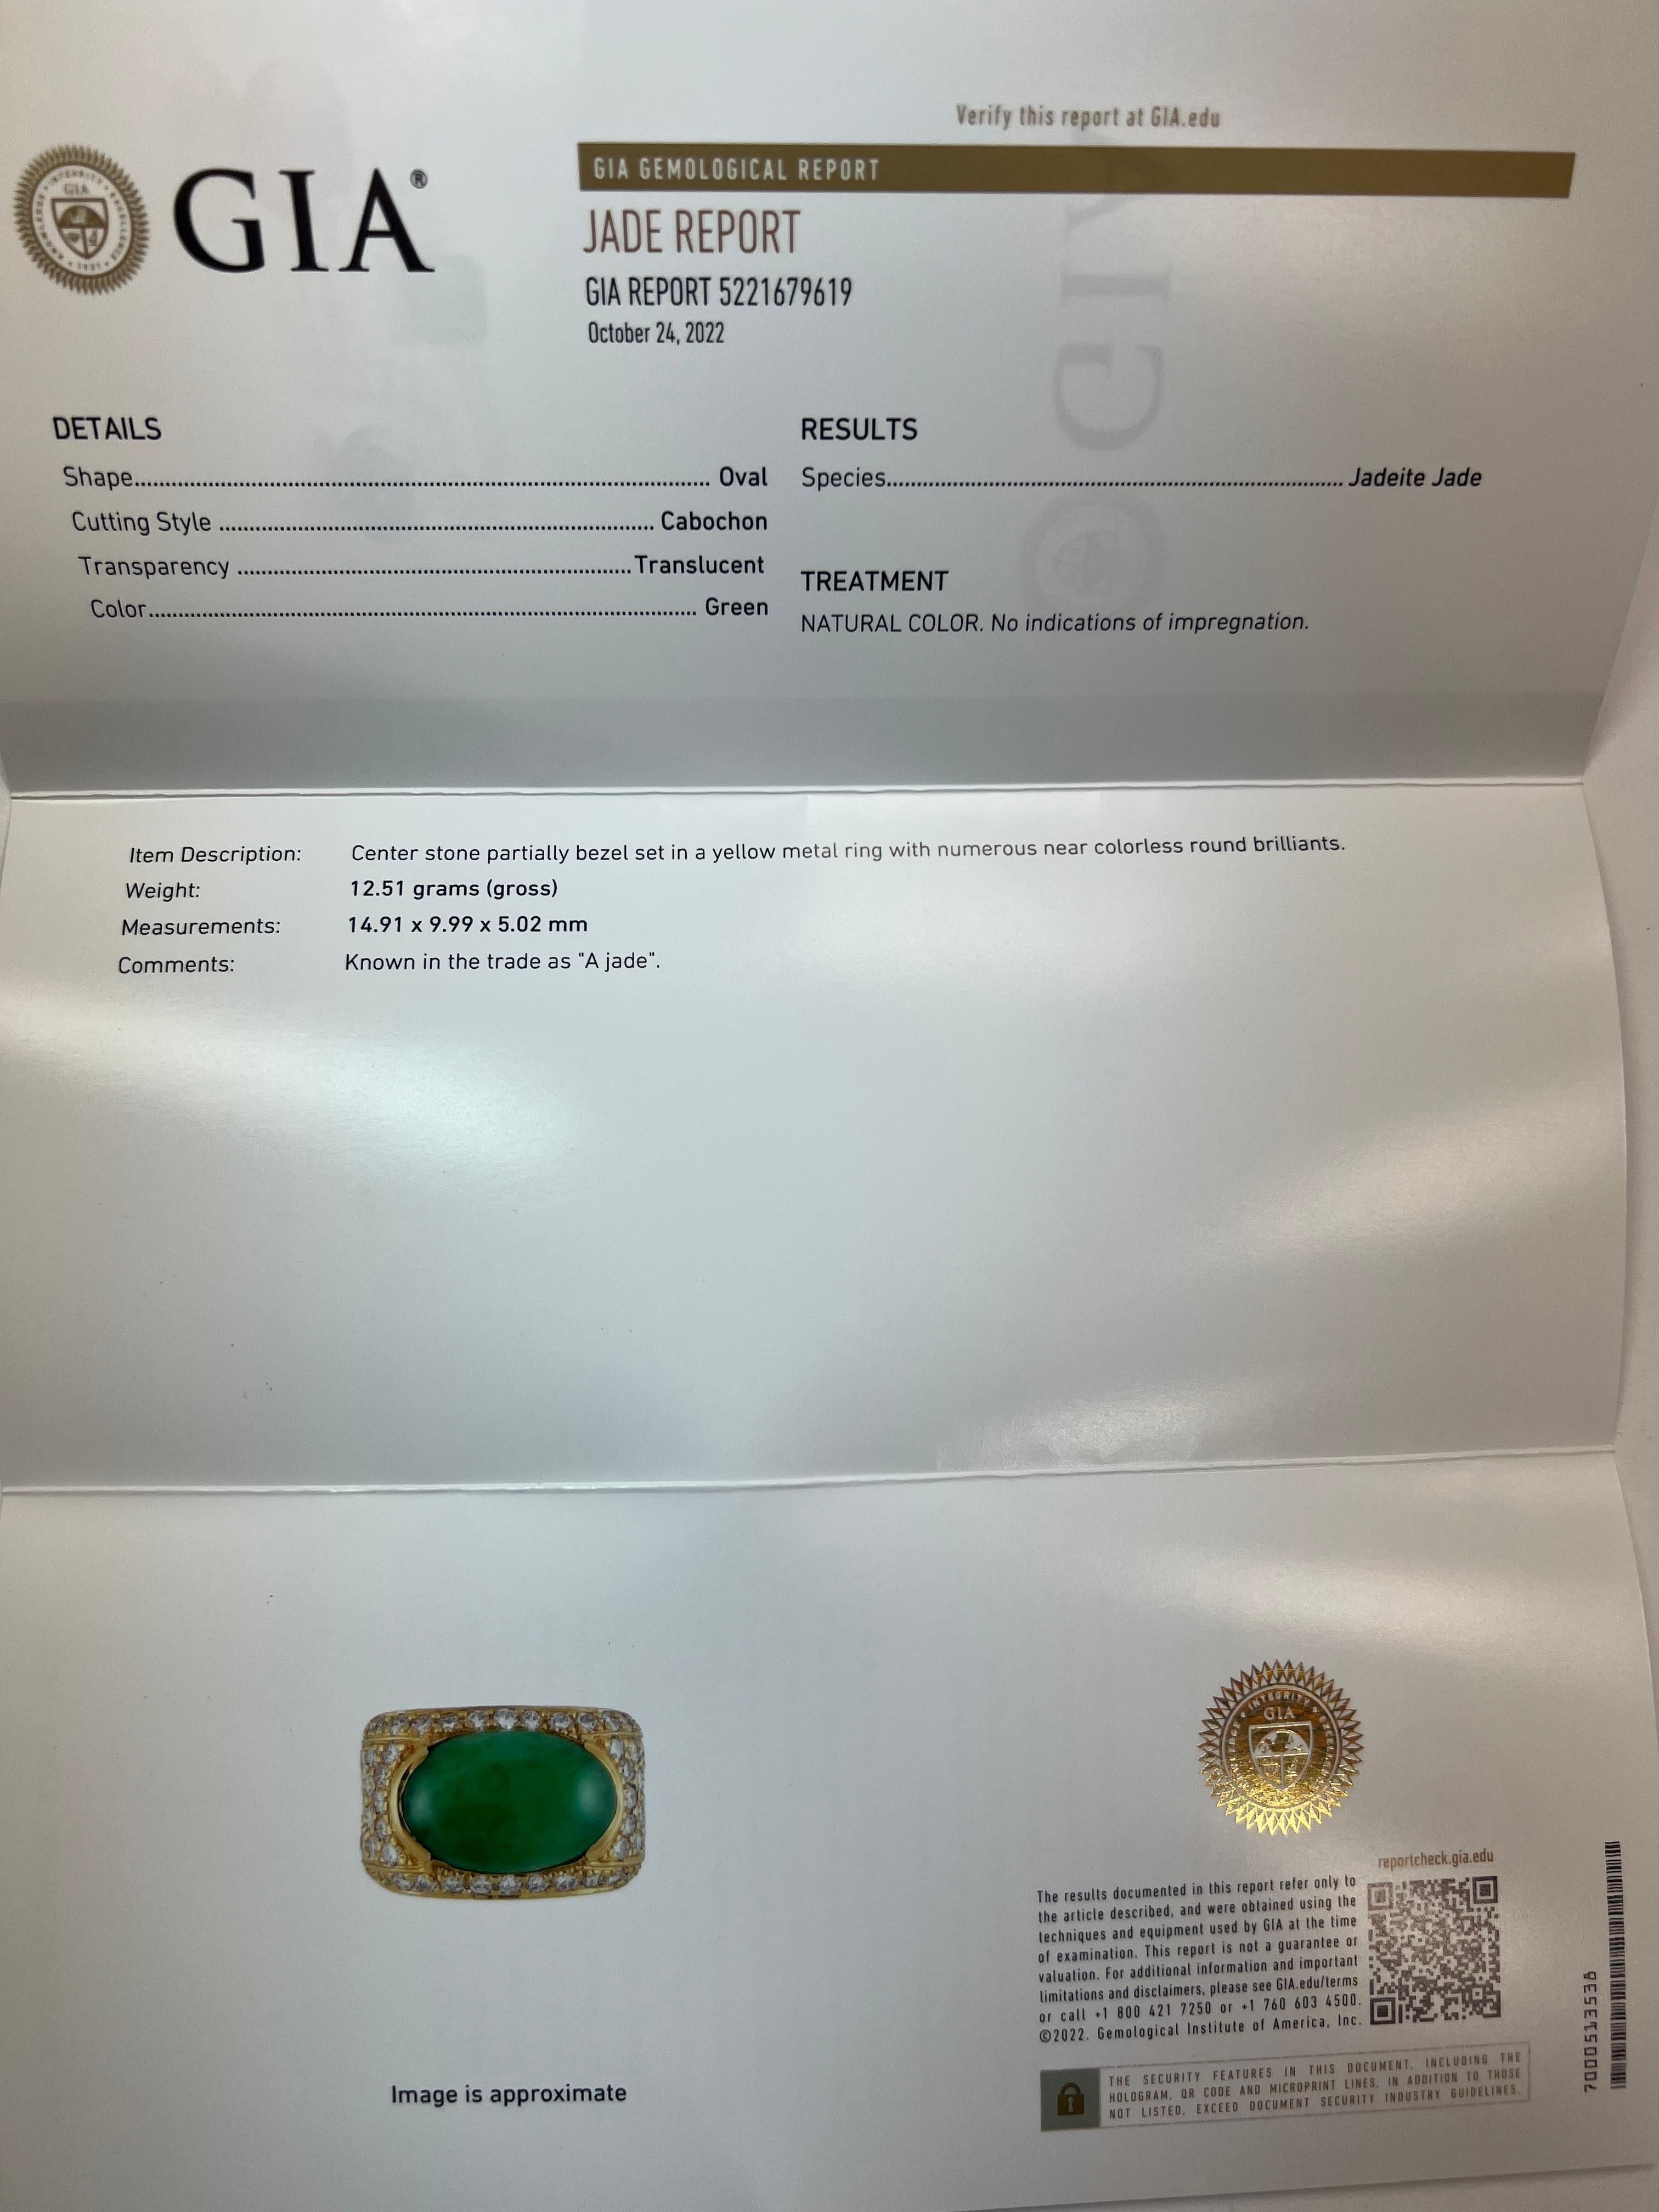 Retro 18k Gelbgold Cocktail Ring Natural GIA zertifiziert (Bericht #5221679619) Jadeit Jade Messung 14,91x9,99x5,02mm (12,51 Gramm) & 50 runde Brillanten  (ca. 1,59 Karat), F-G in Farbe und VS-Reinheit), CIRCA 1950. 

Die Jade ist 